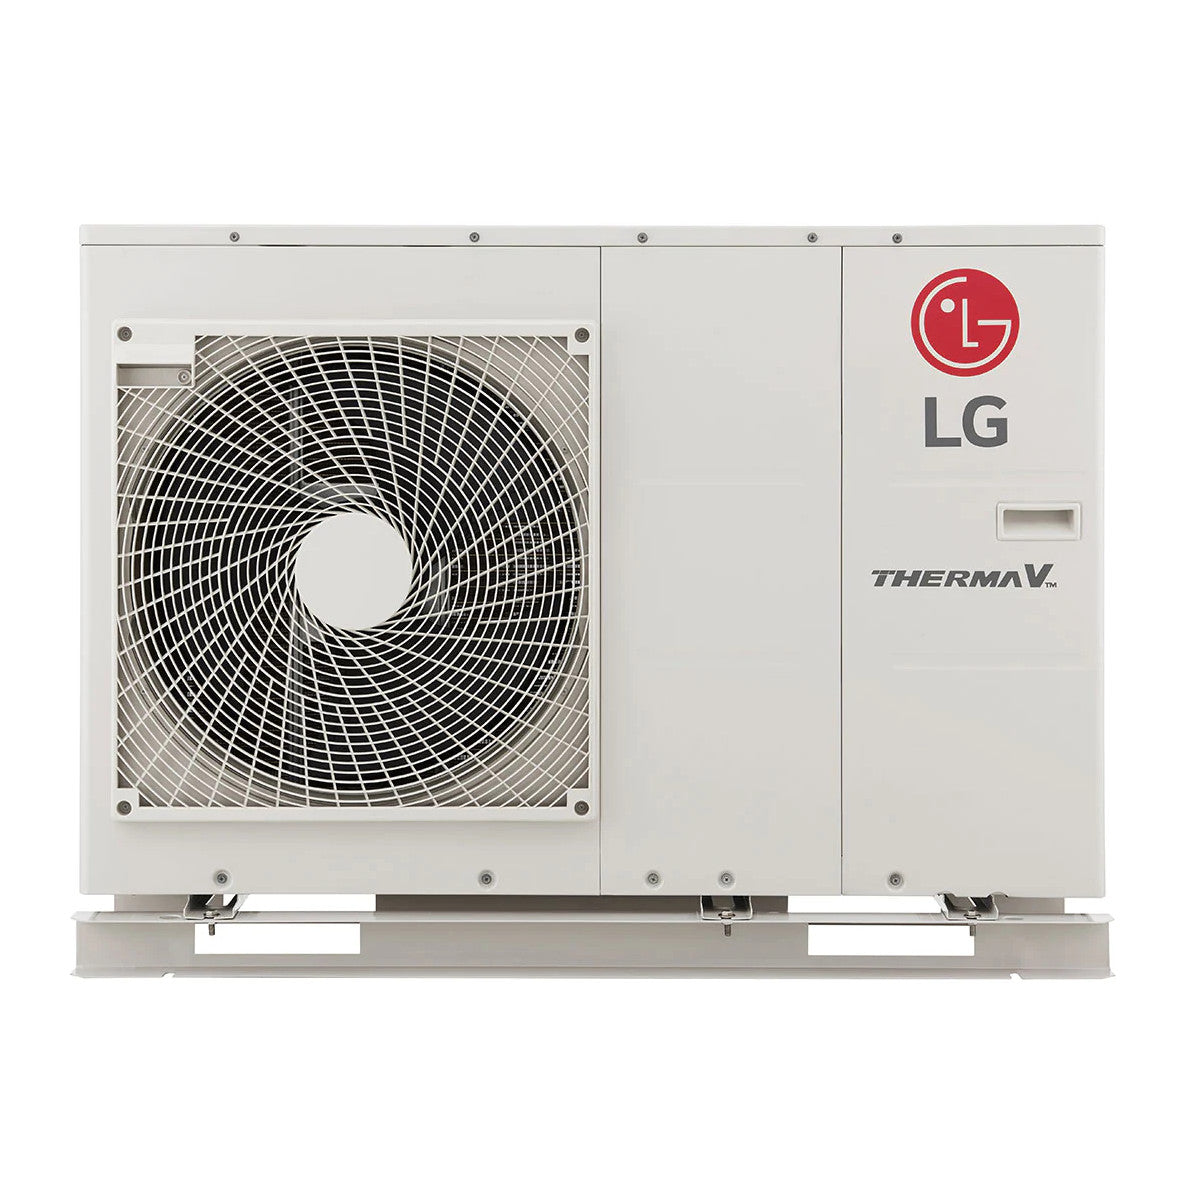 LG Therma-V - HM091MR.U44 - monoblokkos hőszivattyú 9,0 kW (R32) 1Ø (a fűtőbetétet nem tartalmazza)-0